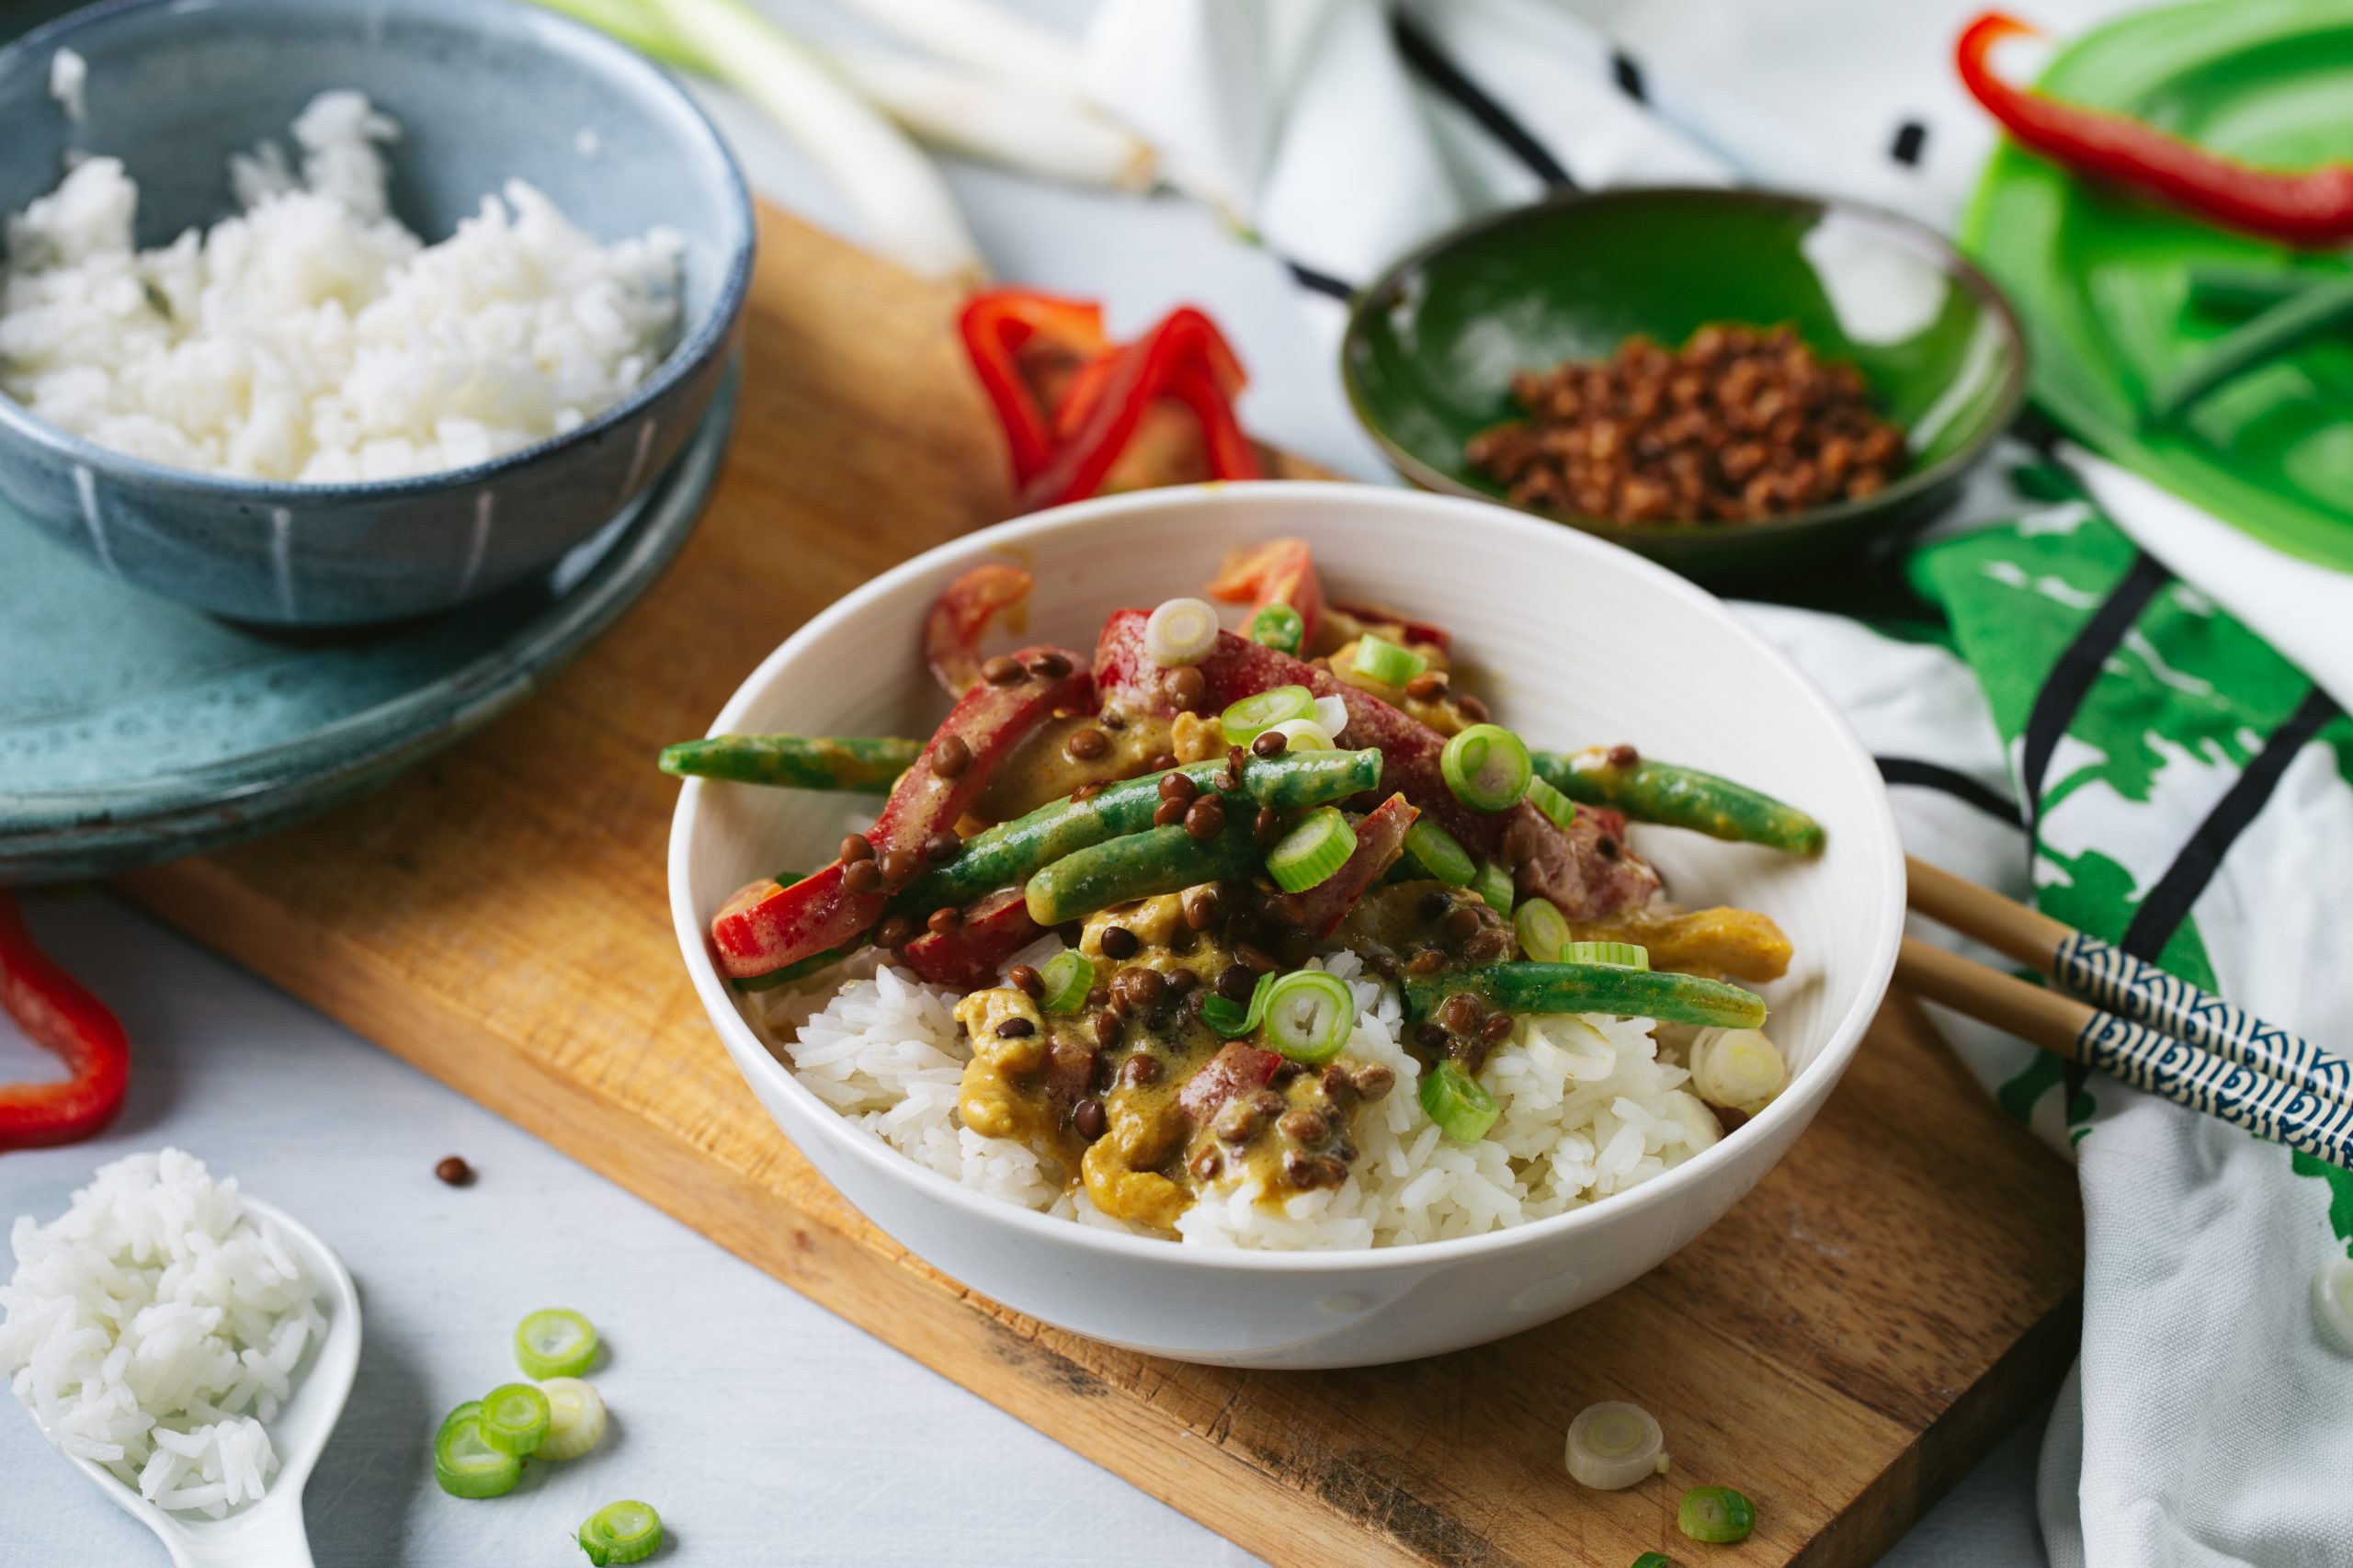 Bedoel Recyclen Orthodox Thaise groene curry met kip, paprika en linzen - Fairtrade Original